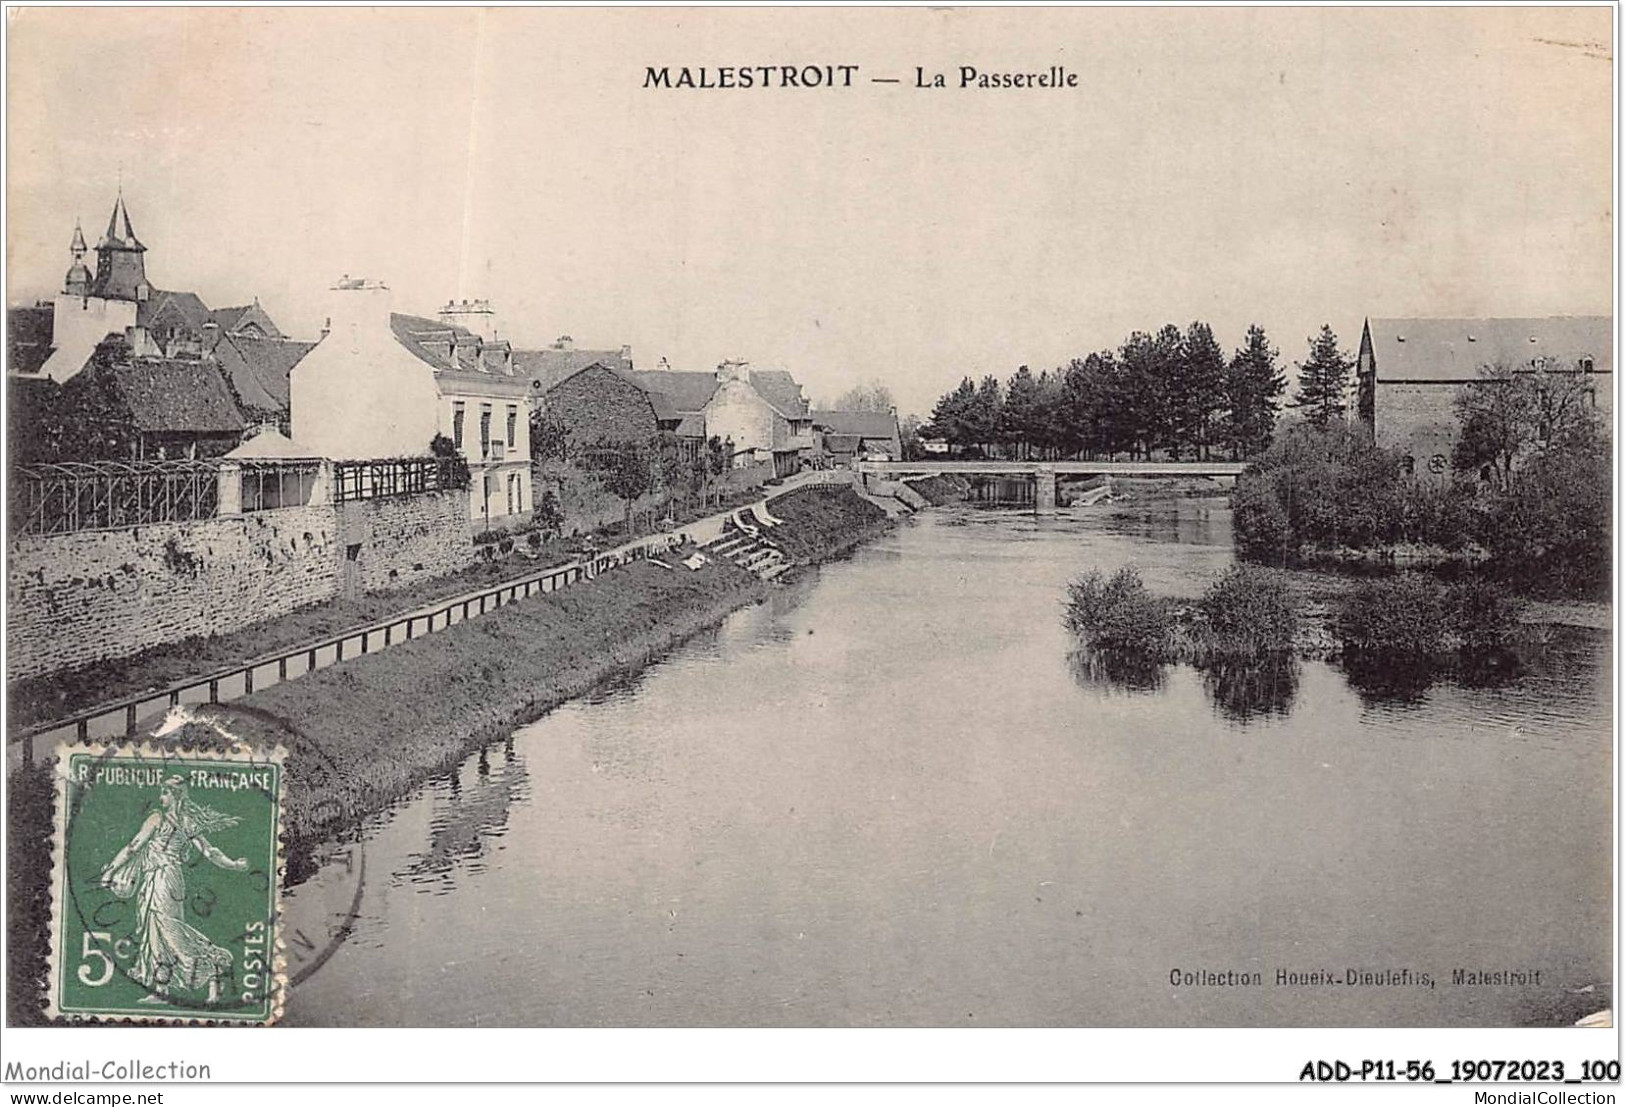 ADDP11-56-0996 - MALESTROIT - La Passerelle - Malestroit